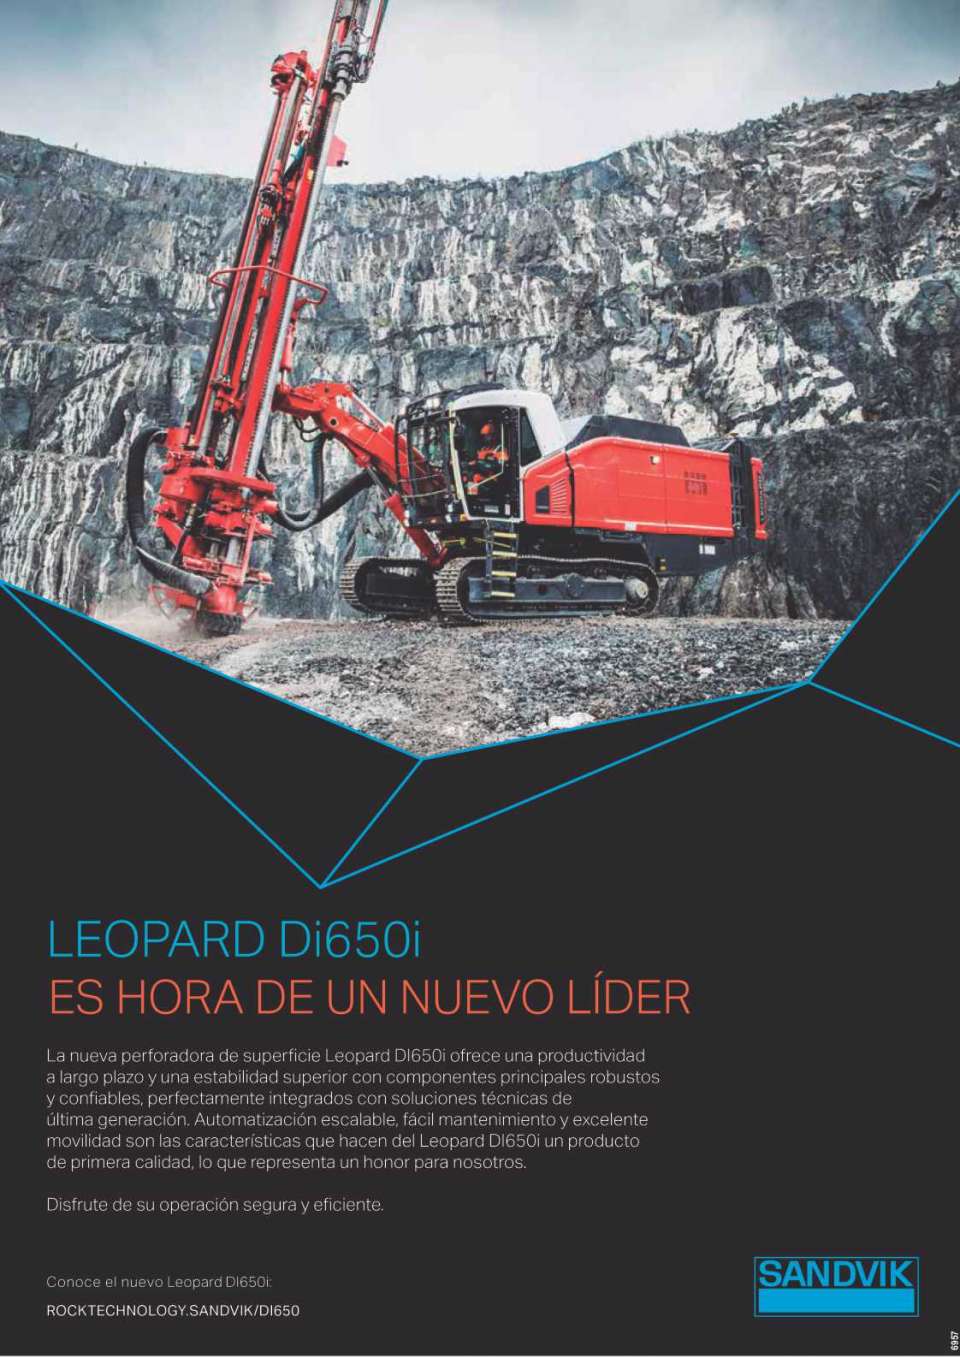 La nueva perforadora de superficie Leopard Dl650i ofrece una productividad a largo plazo y una estabilidad superior con componentes principales, robustos y confiables, perfectamente integrados.